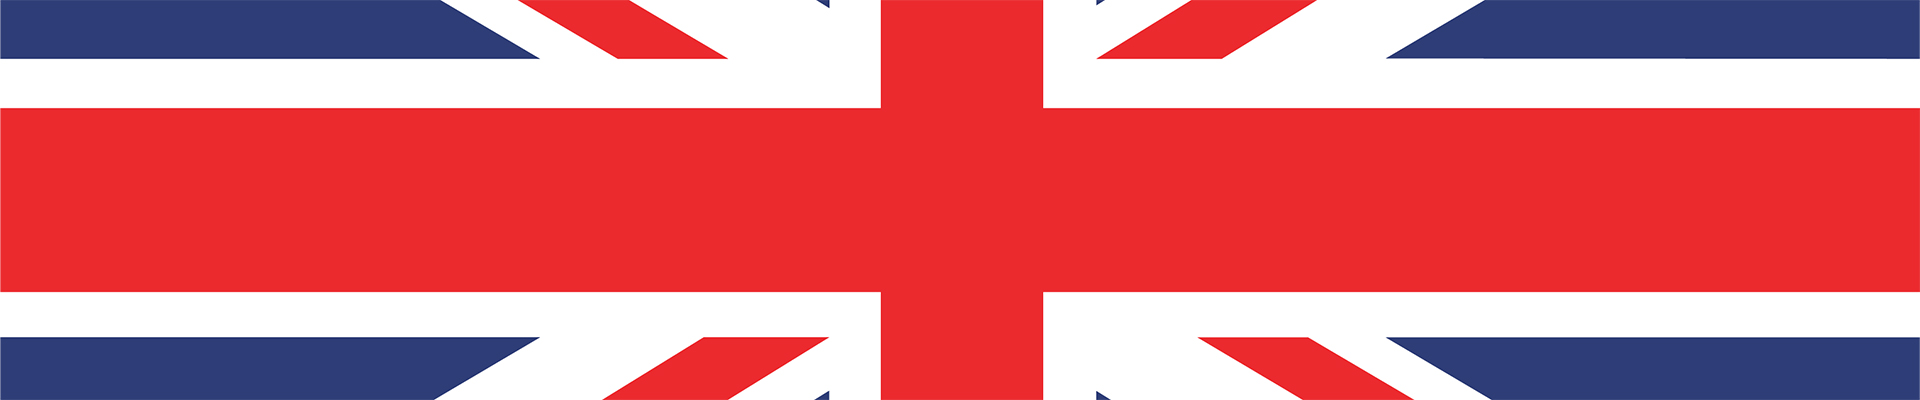 Djokovic vs Ruud en direct – drapeau britannique